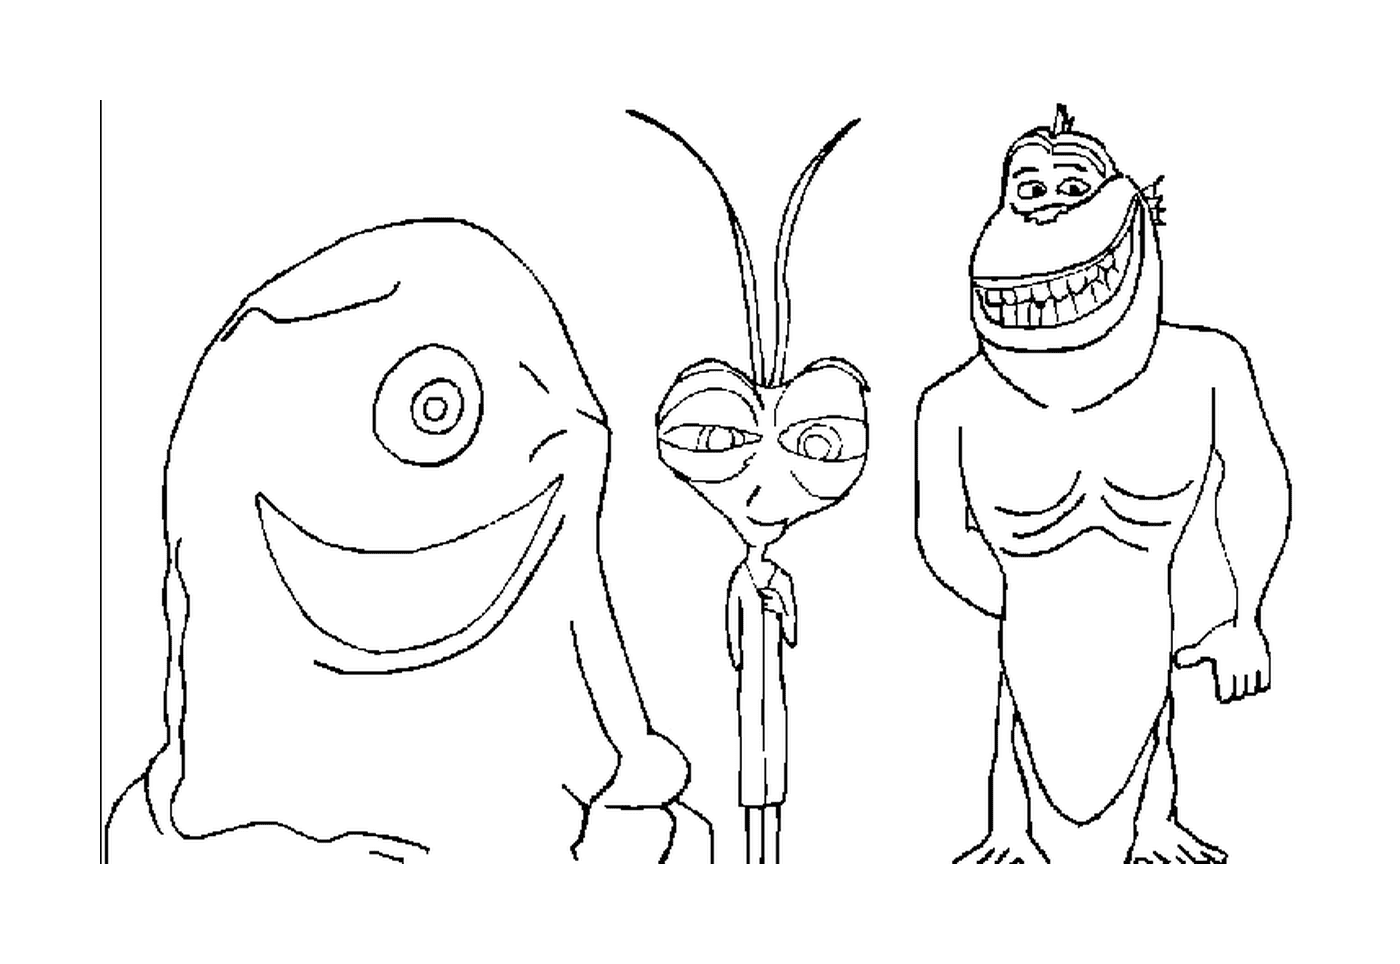  Personajes animados del grupo de monstruos 